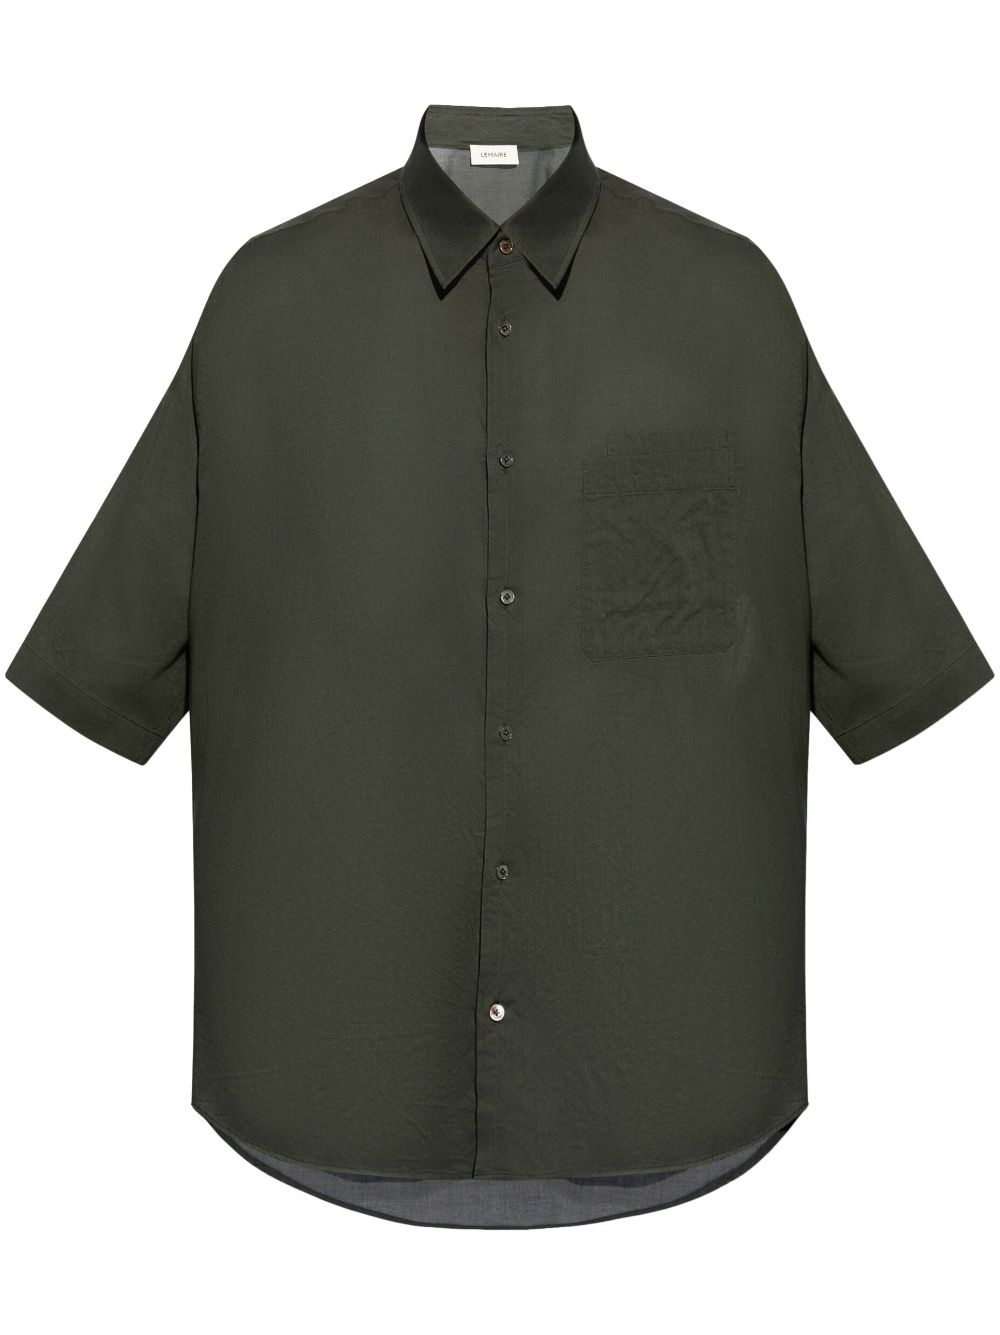 double-pocket cotton shirt - 1